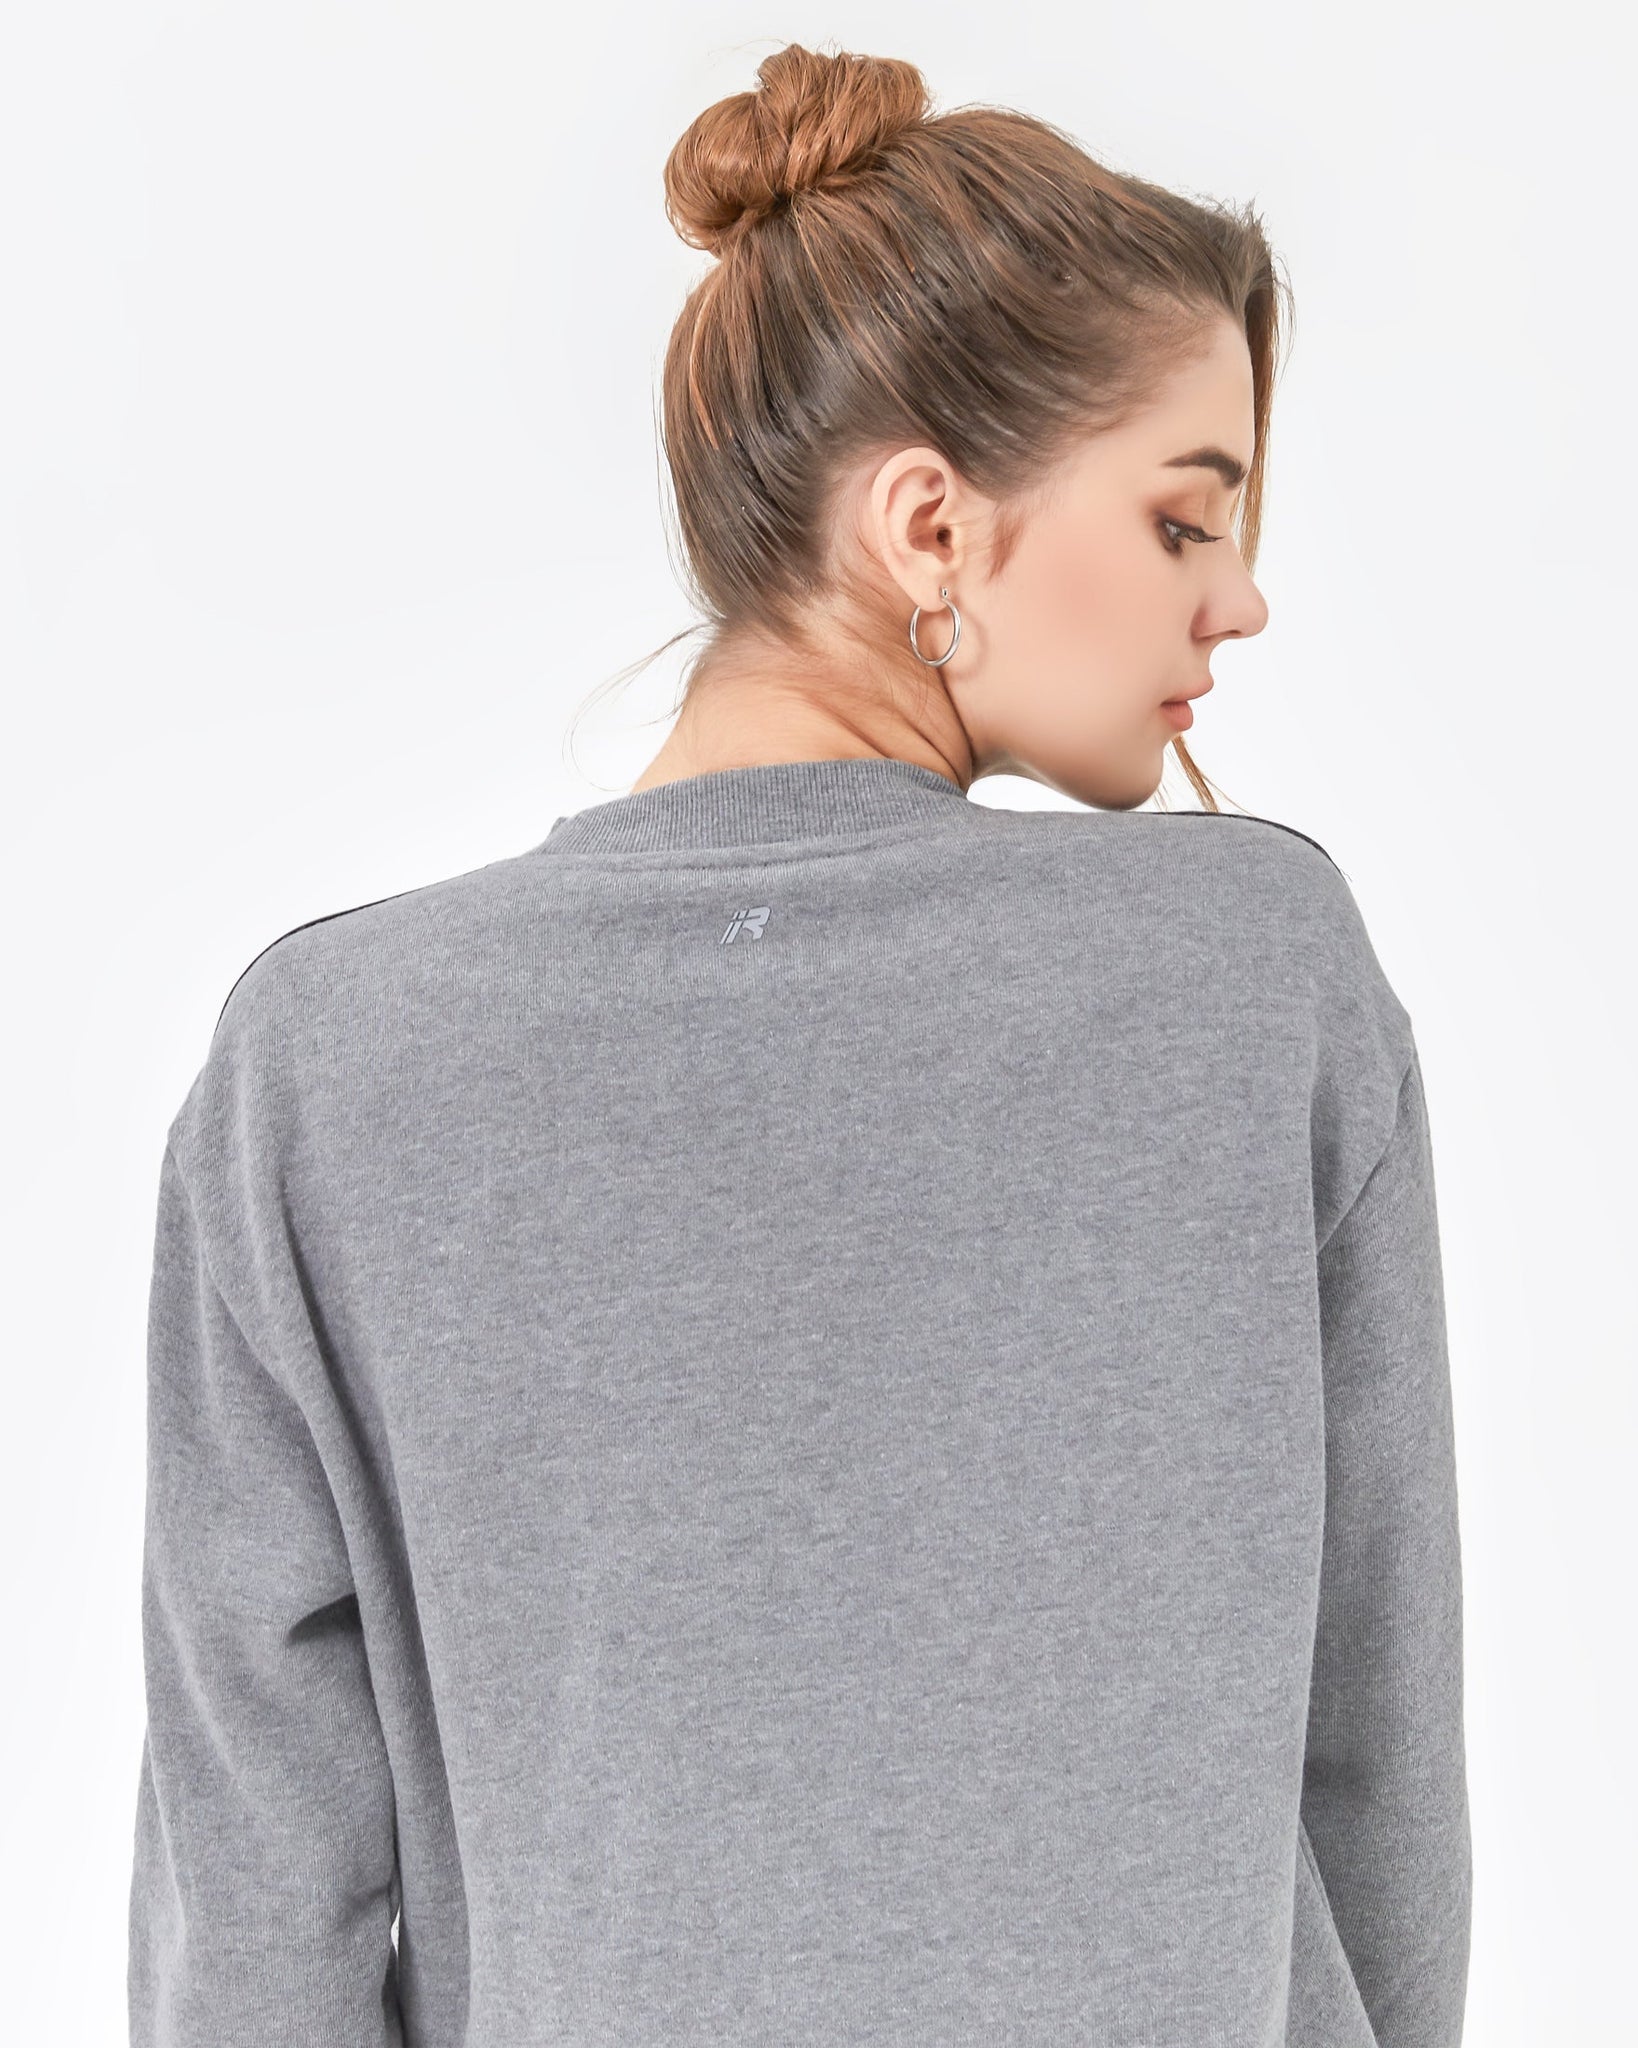 Sideline Fleece Sweatshirt-11